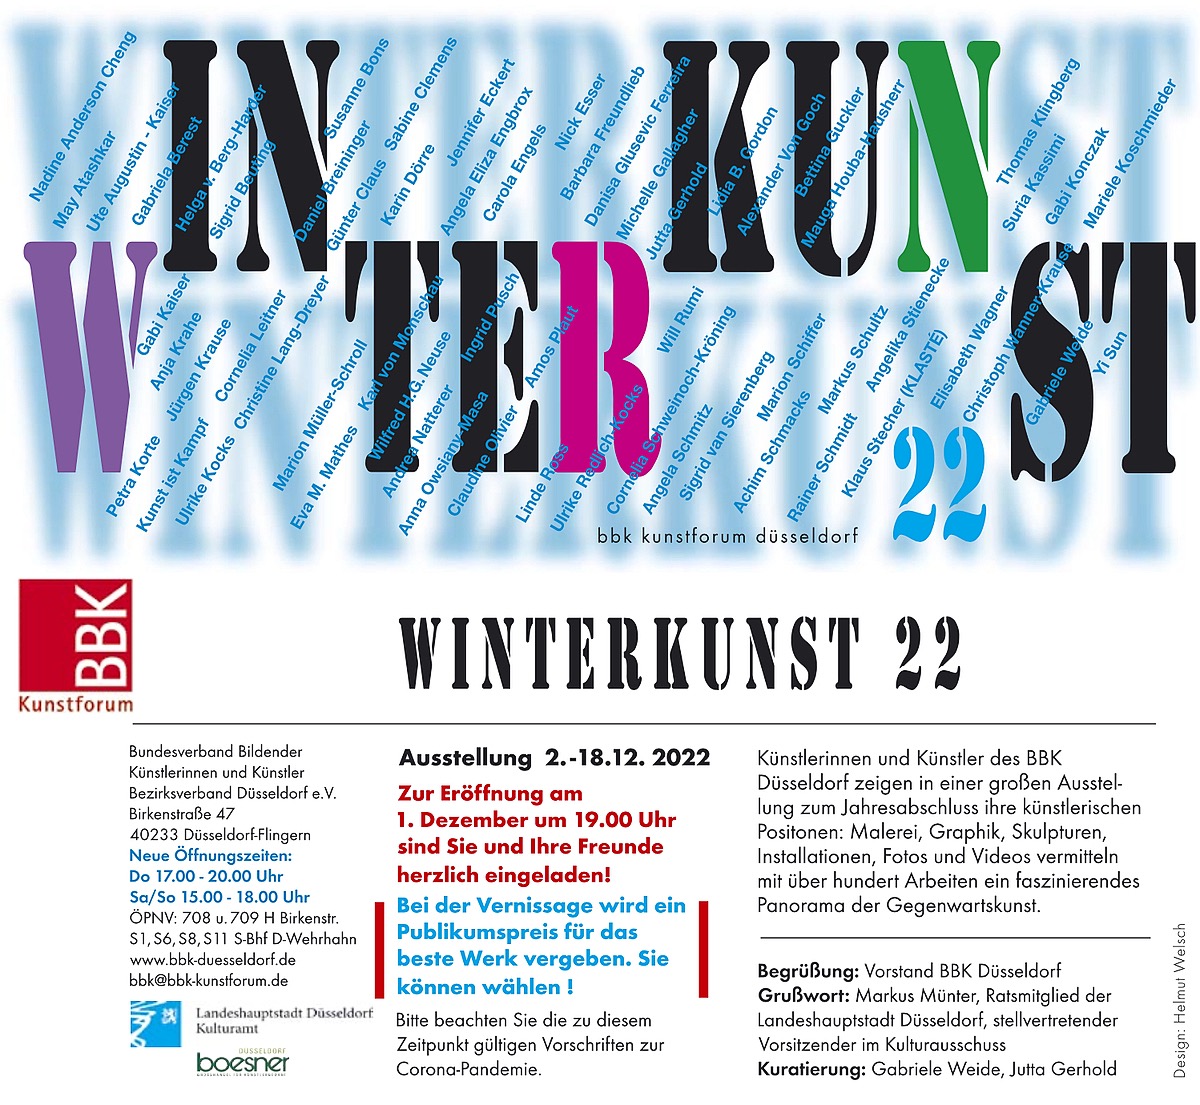 Invitation flyer for the exhibition BBK Winterkunst 22 in Düsseldorf